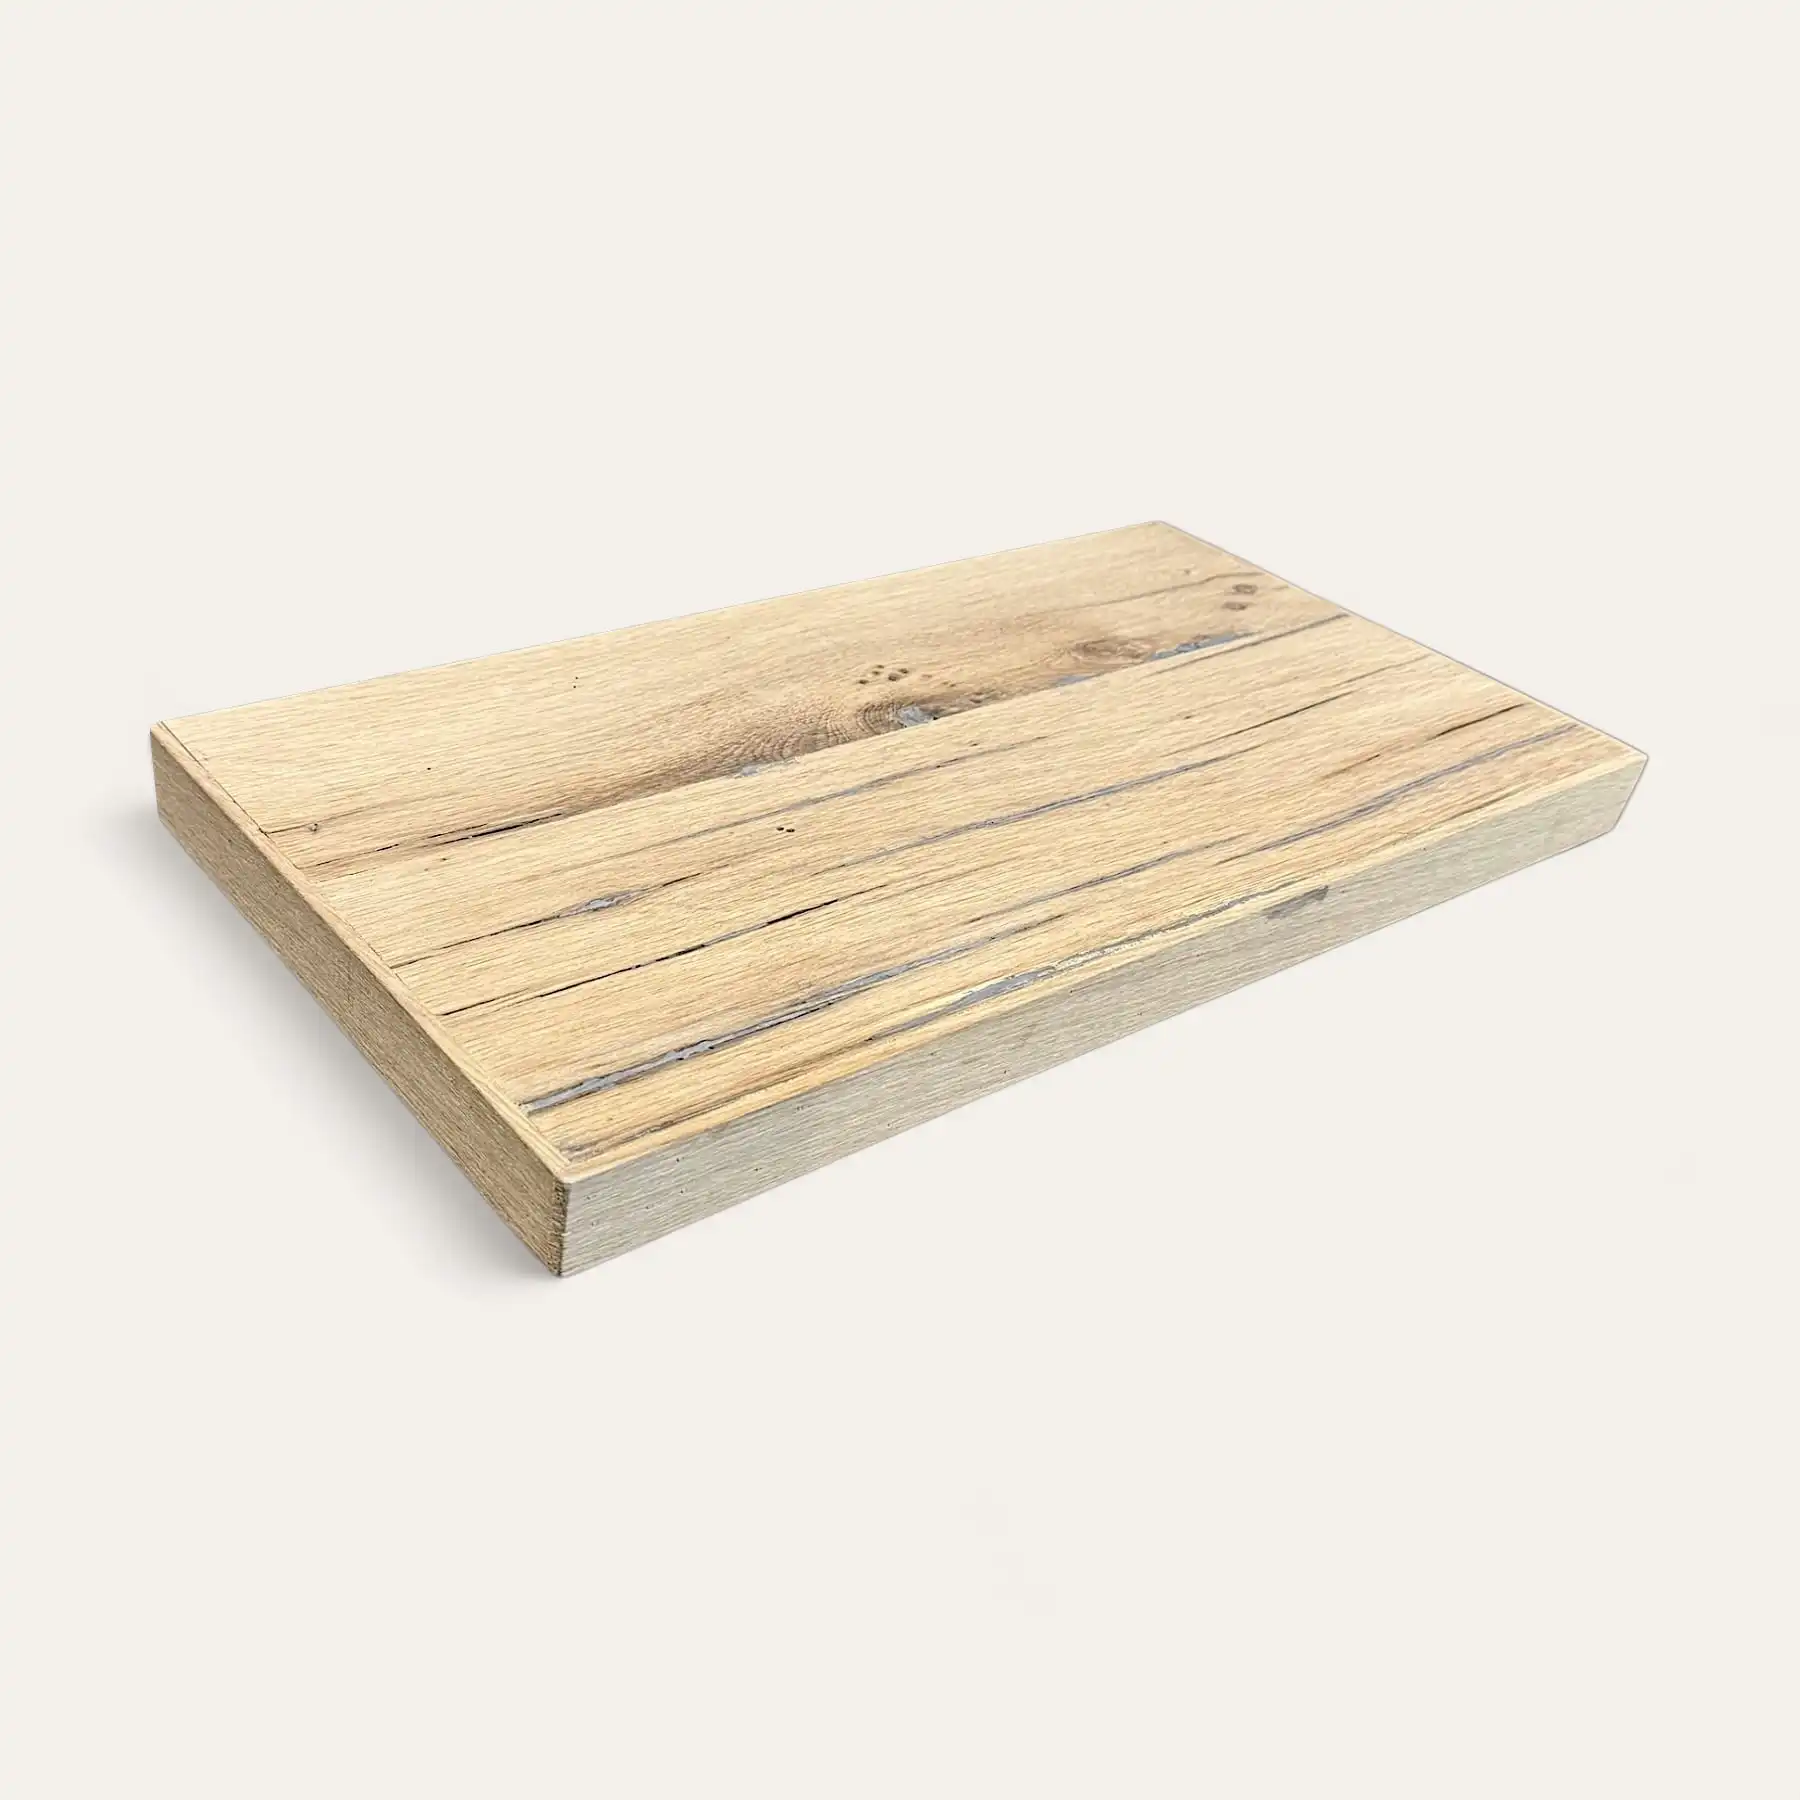  Planche à découper rectangulaire en bois avec une finition en bois clair et naturel et des motifs de grains de bois visibles, rappelant une étagère en bois ancien, posés sur un fond blanc. 